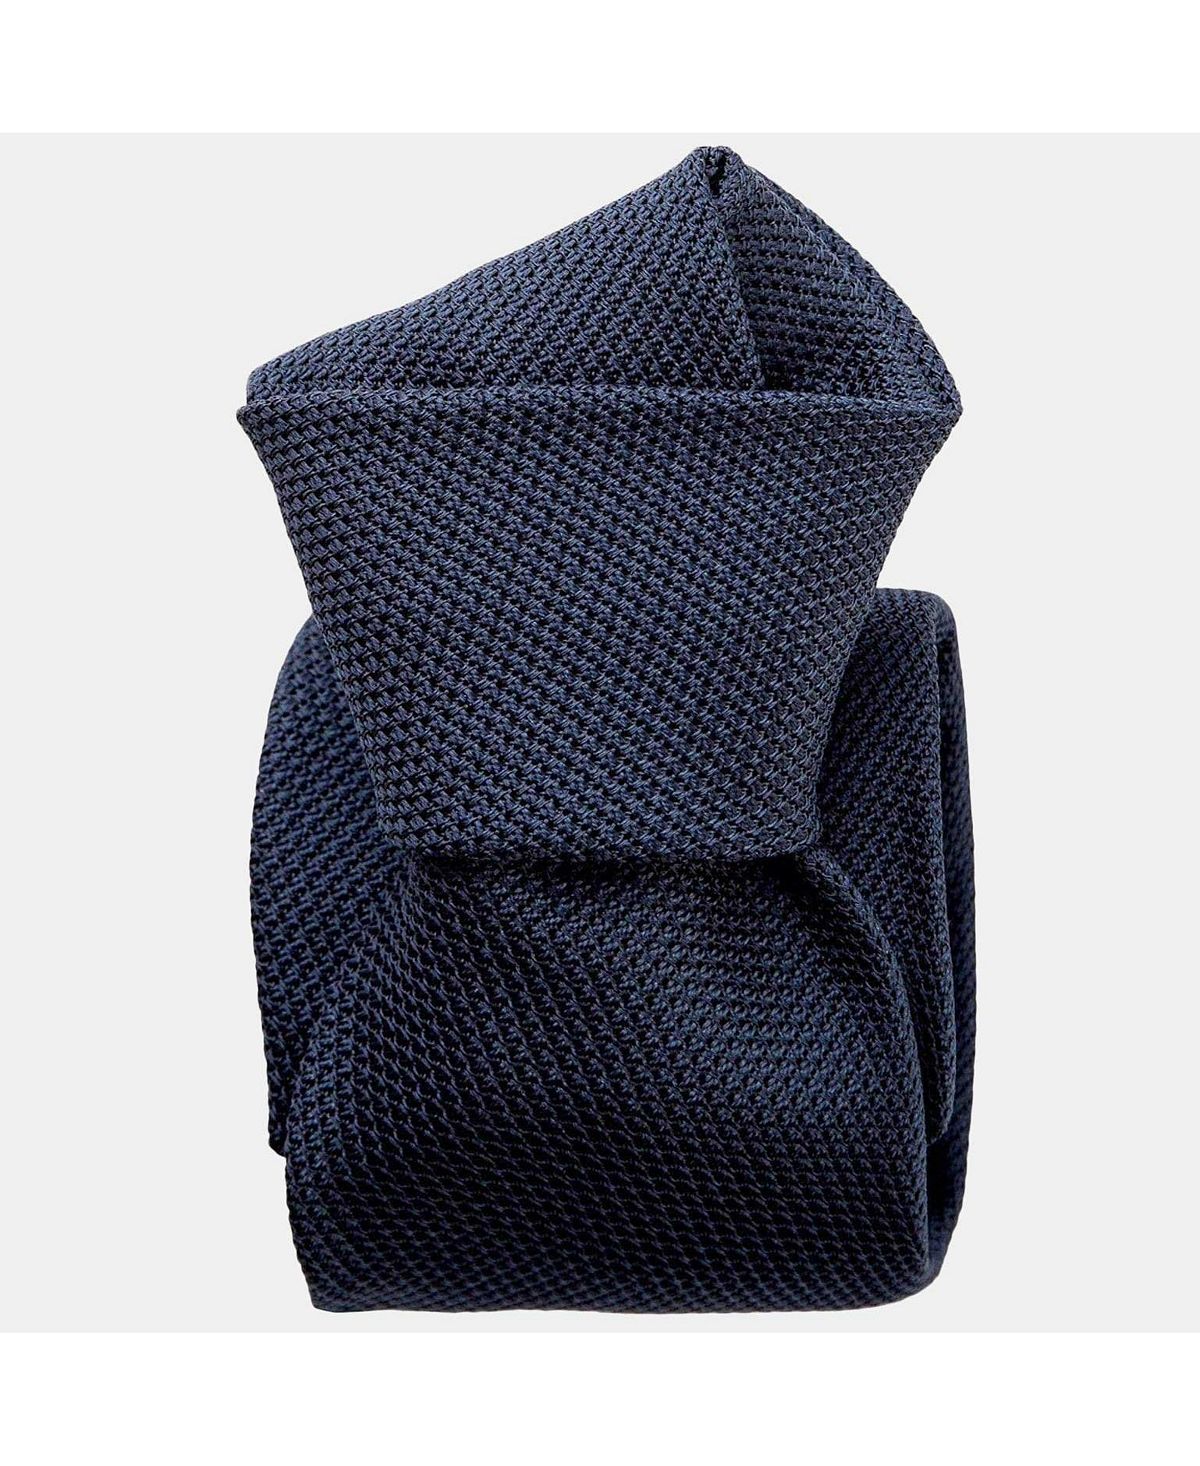 Cavour - мужской шелковый галстук с гренадиновым узором Elizabetta foresta удлиненный шелковый галстук гренадин для мужчин elizabetta